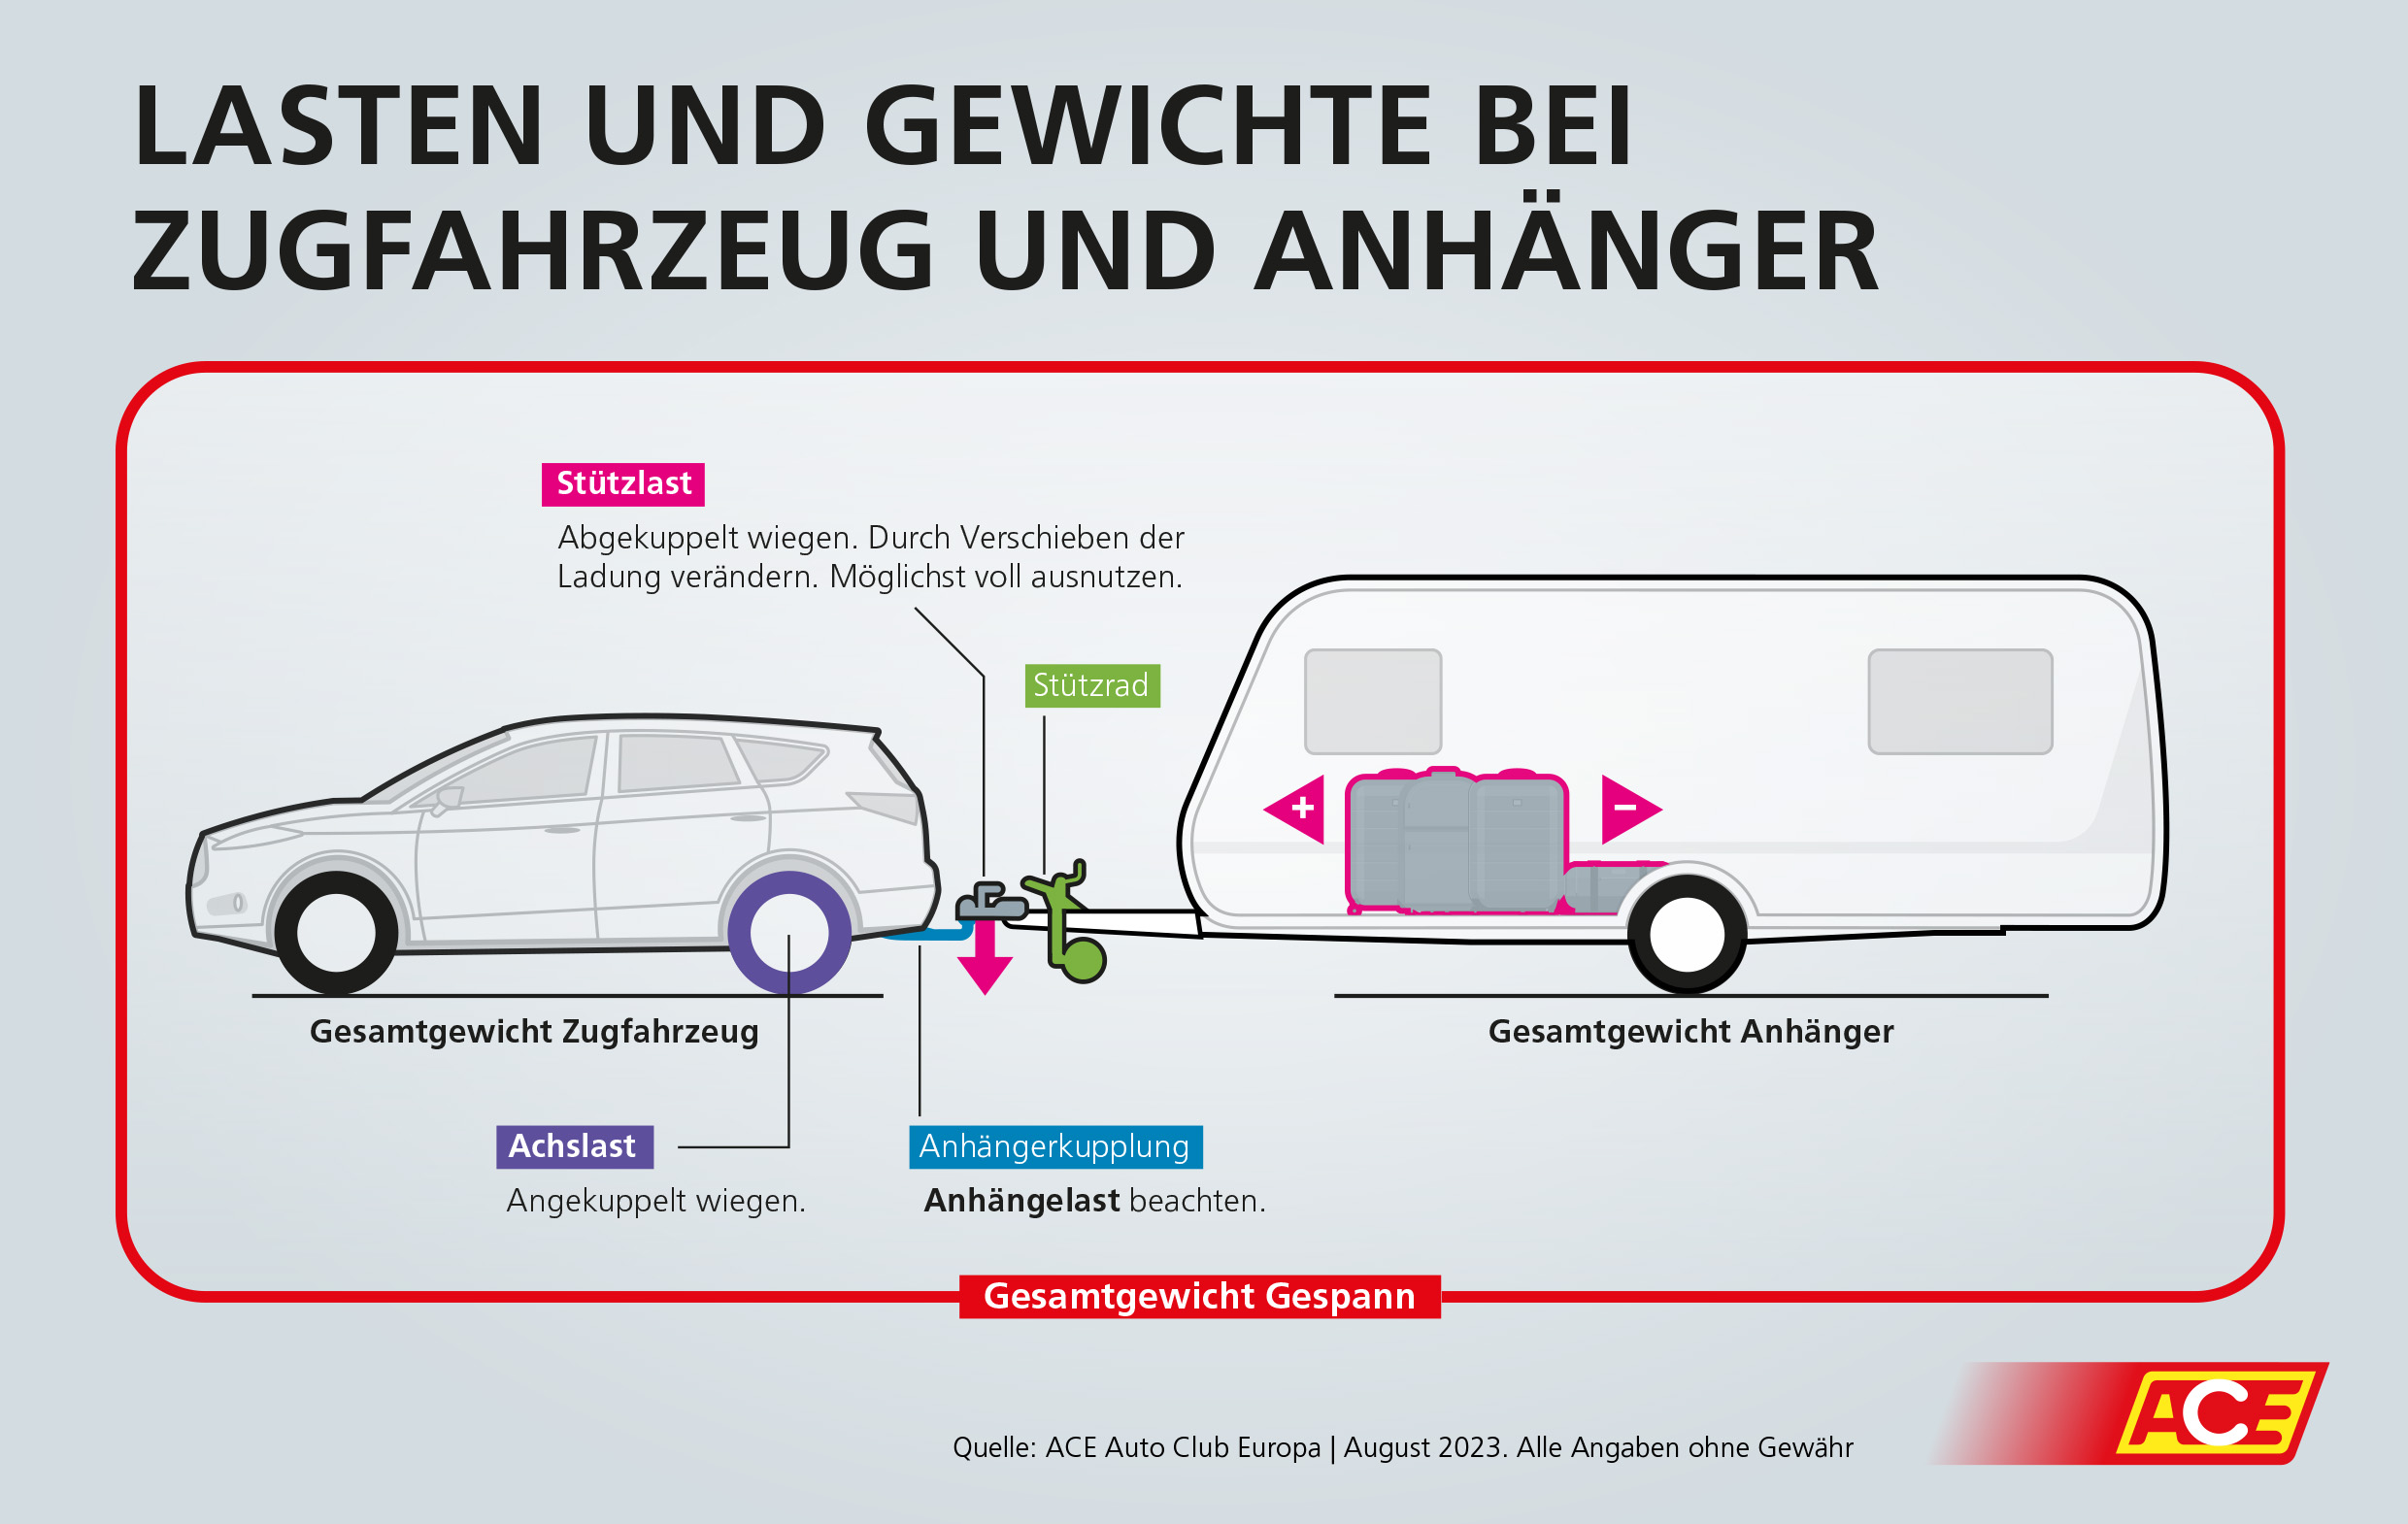 Caravan und Gespann: Anhängelast, Stützlast, Achslast & Co. im Detail  erklärt - Presse Ace